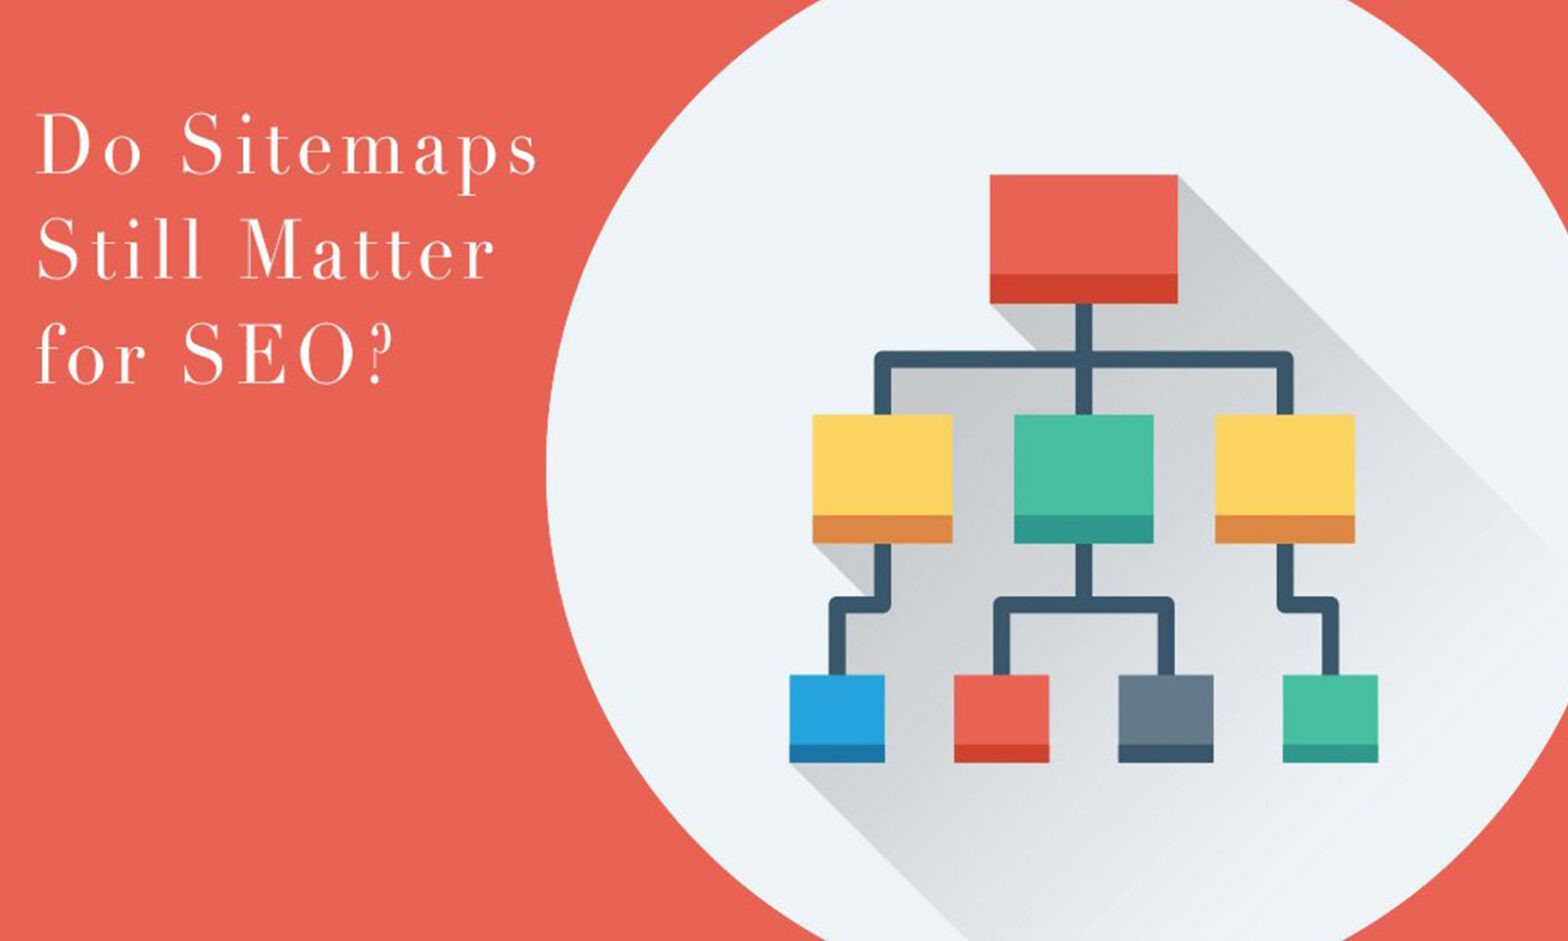 Do Sitemaps Still Matter for SEO?